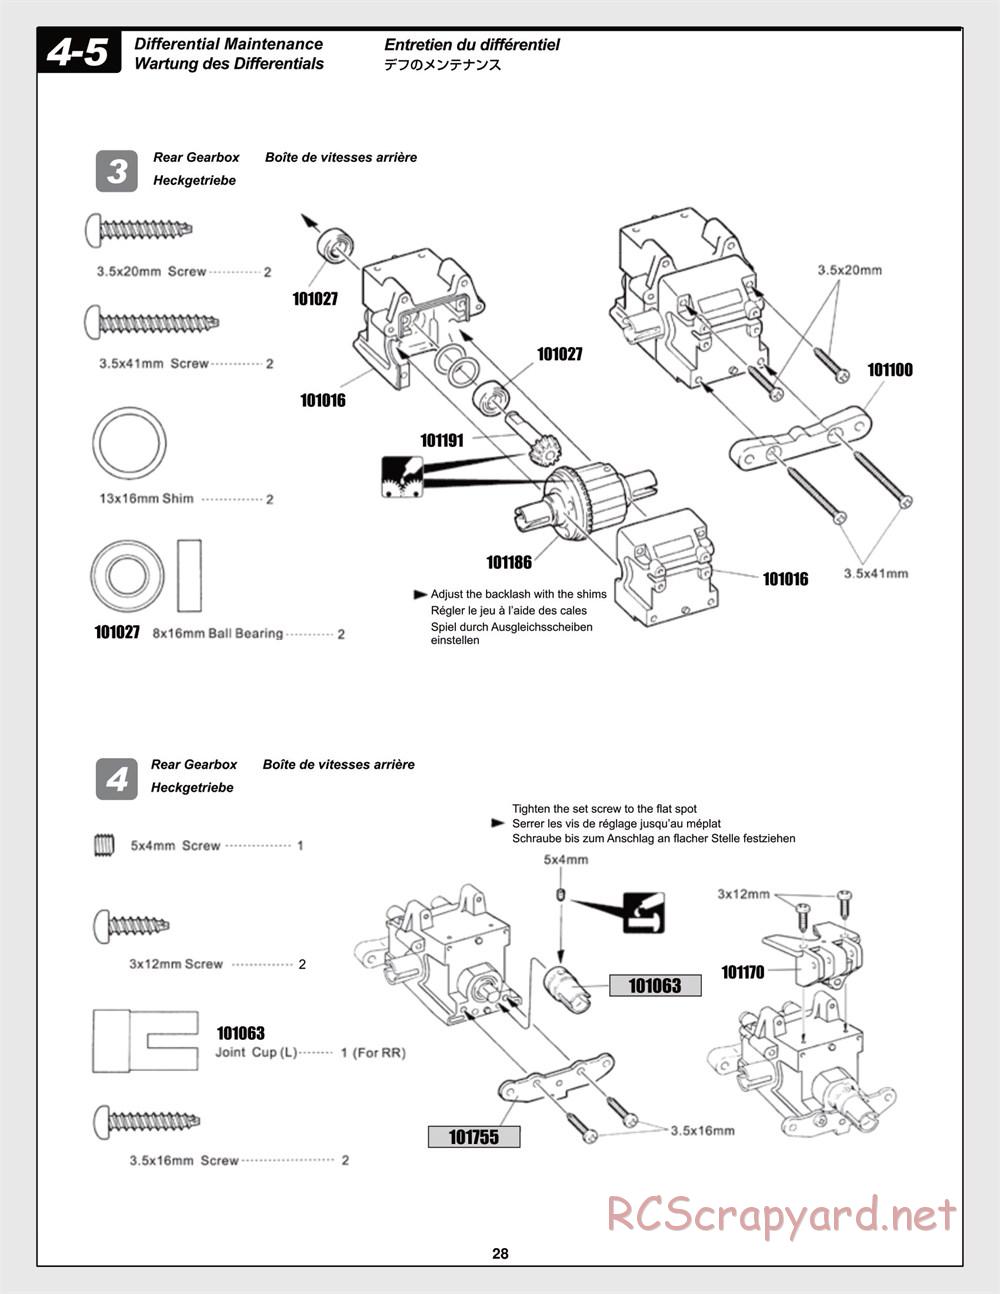 HPI - Trophy Flux Truggy - Manual - Page 28